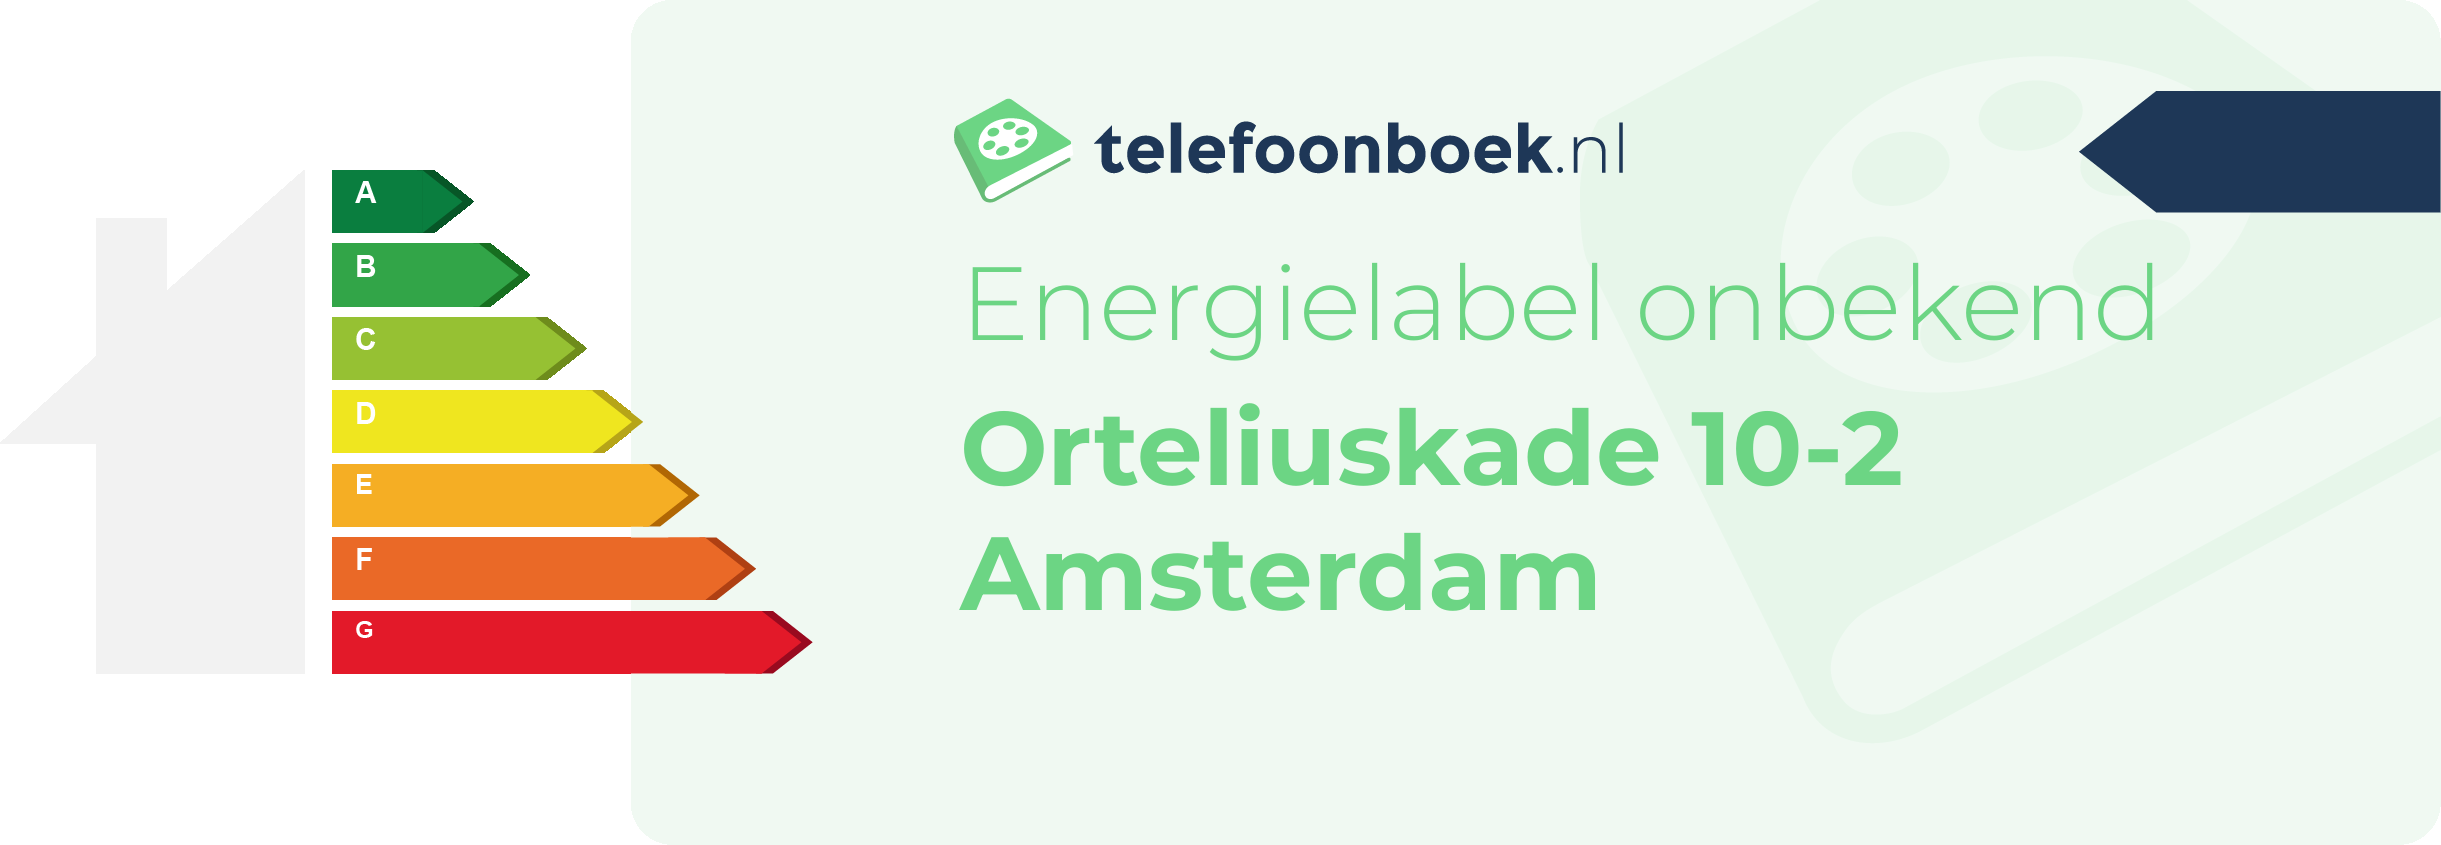 Energielabel Orteliuskade 10-2 Amsterdam